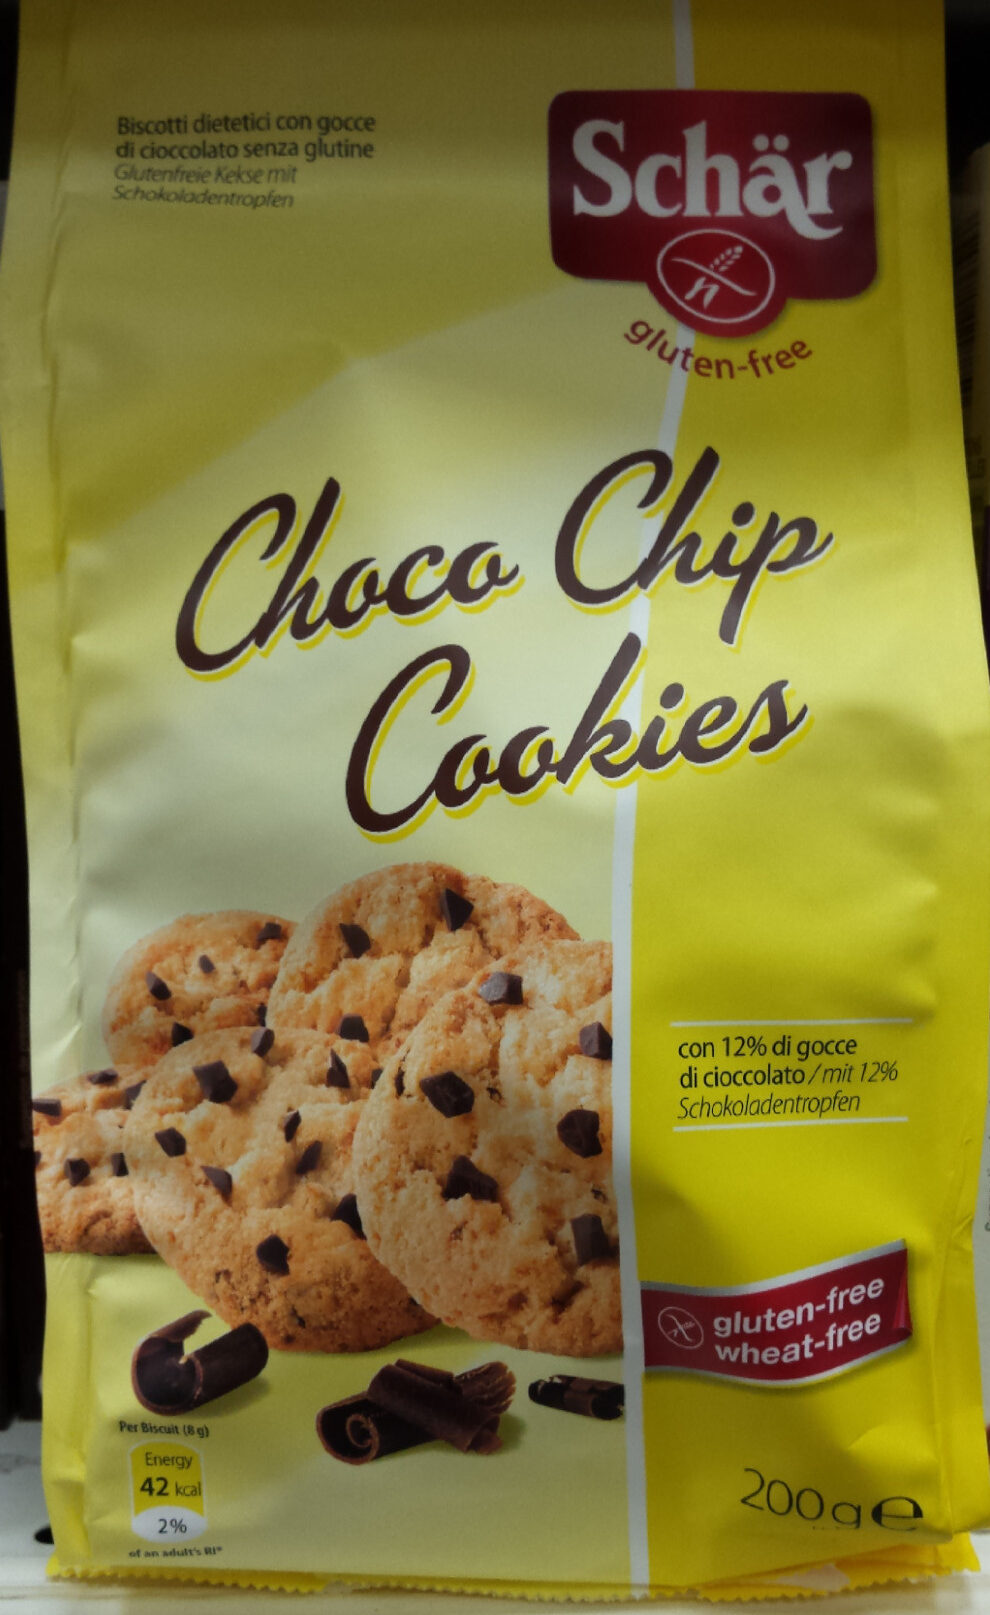 Choco chip cookies gluten free - Produkt - pl